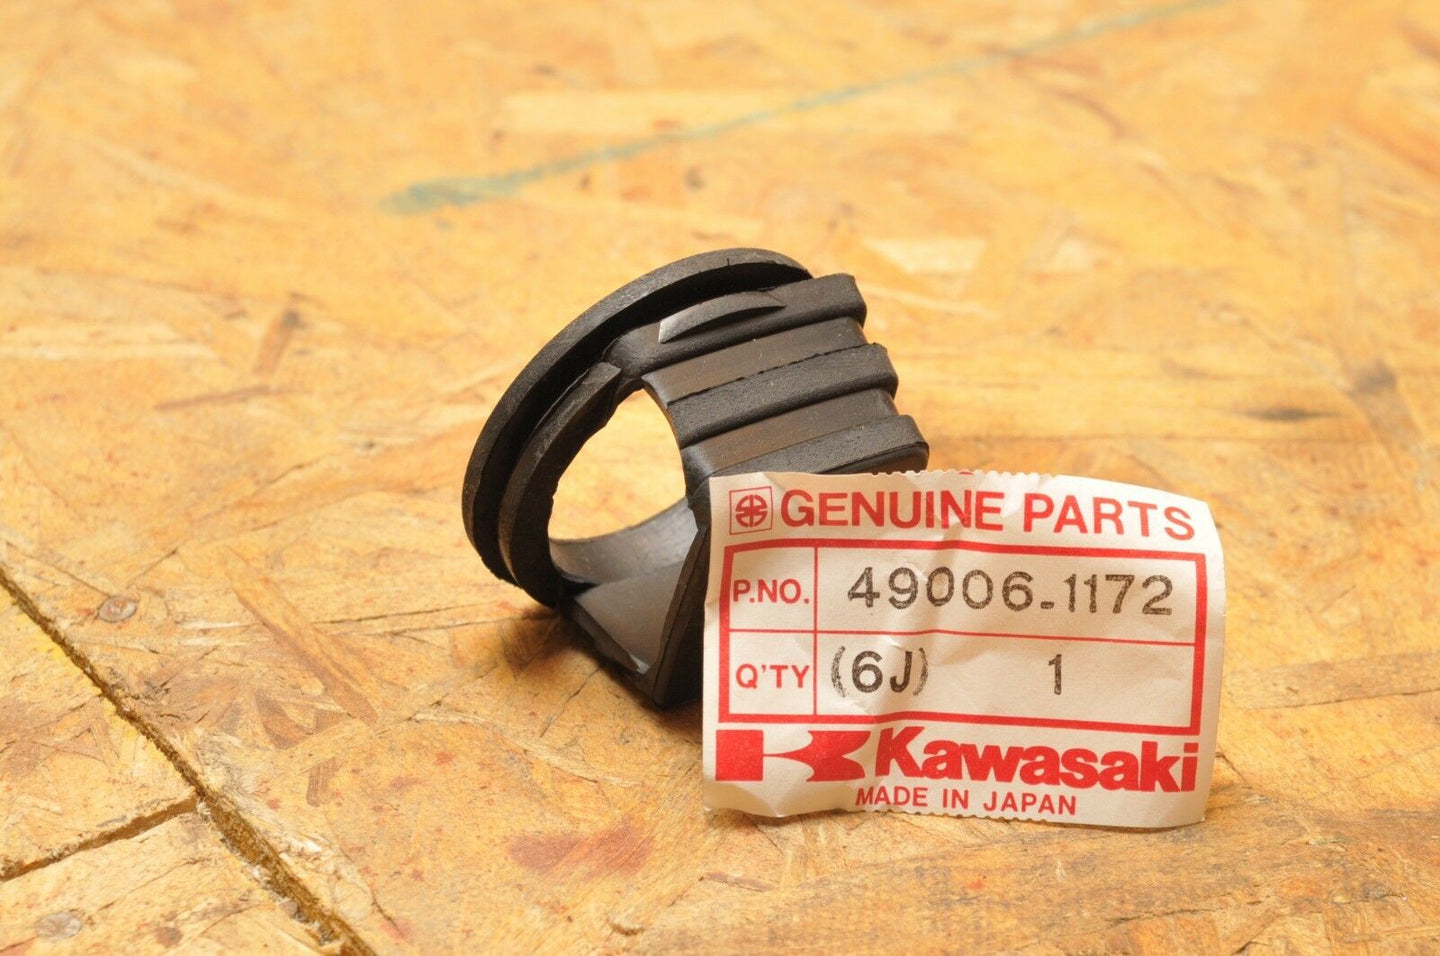 NOS Kawasaki 49006-1172 HEADLIGHT HEAD LAMP BOOT BAYOU KLF300 1988-2005